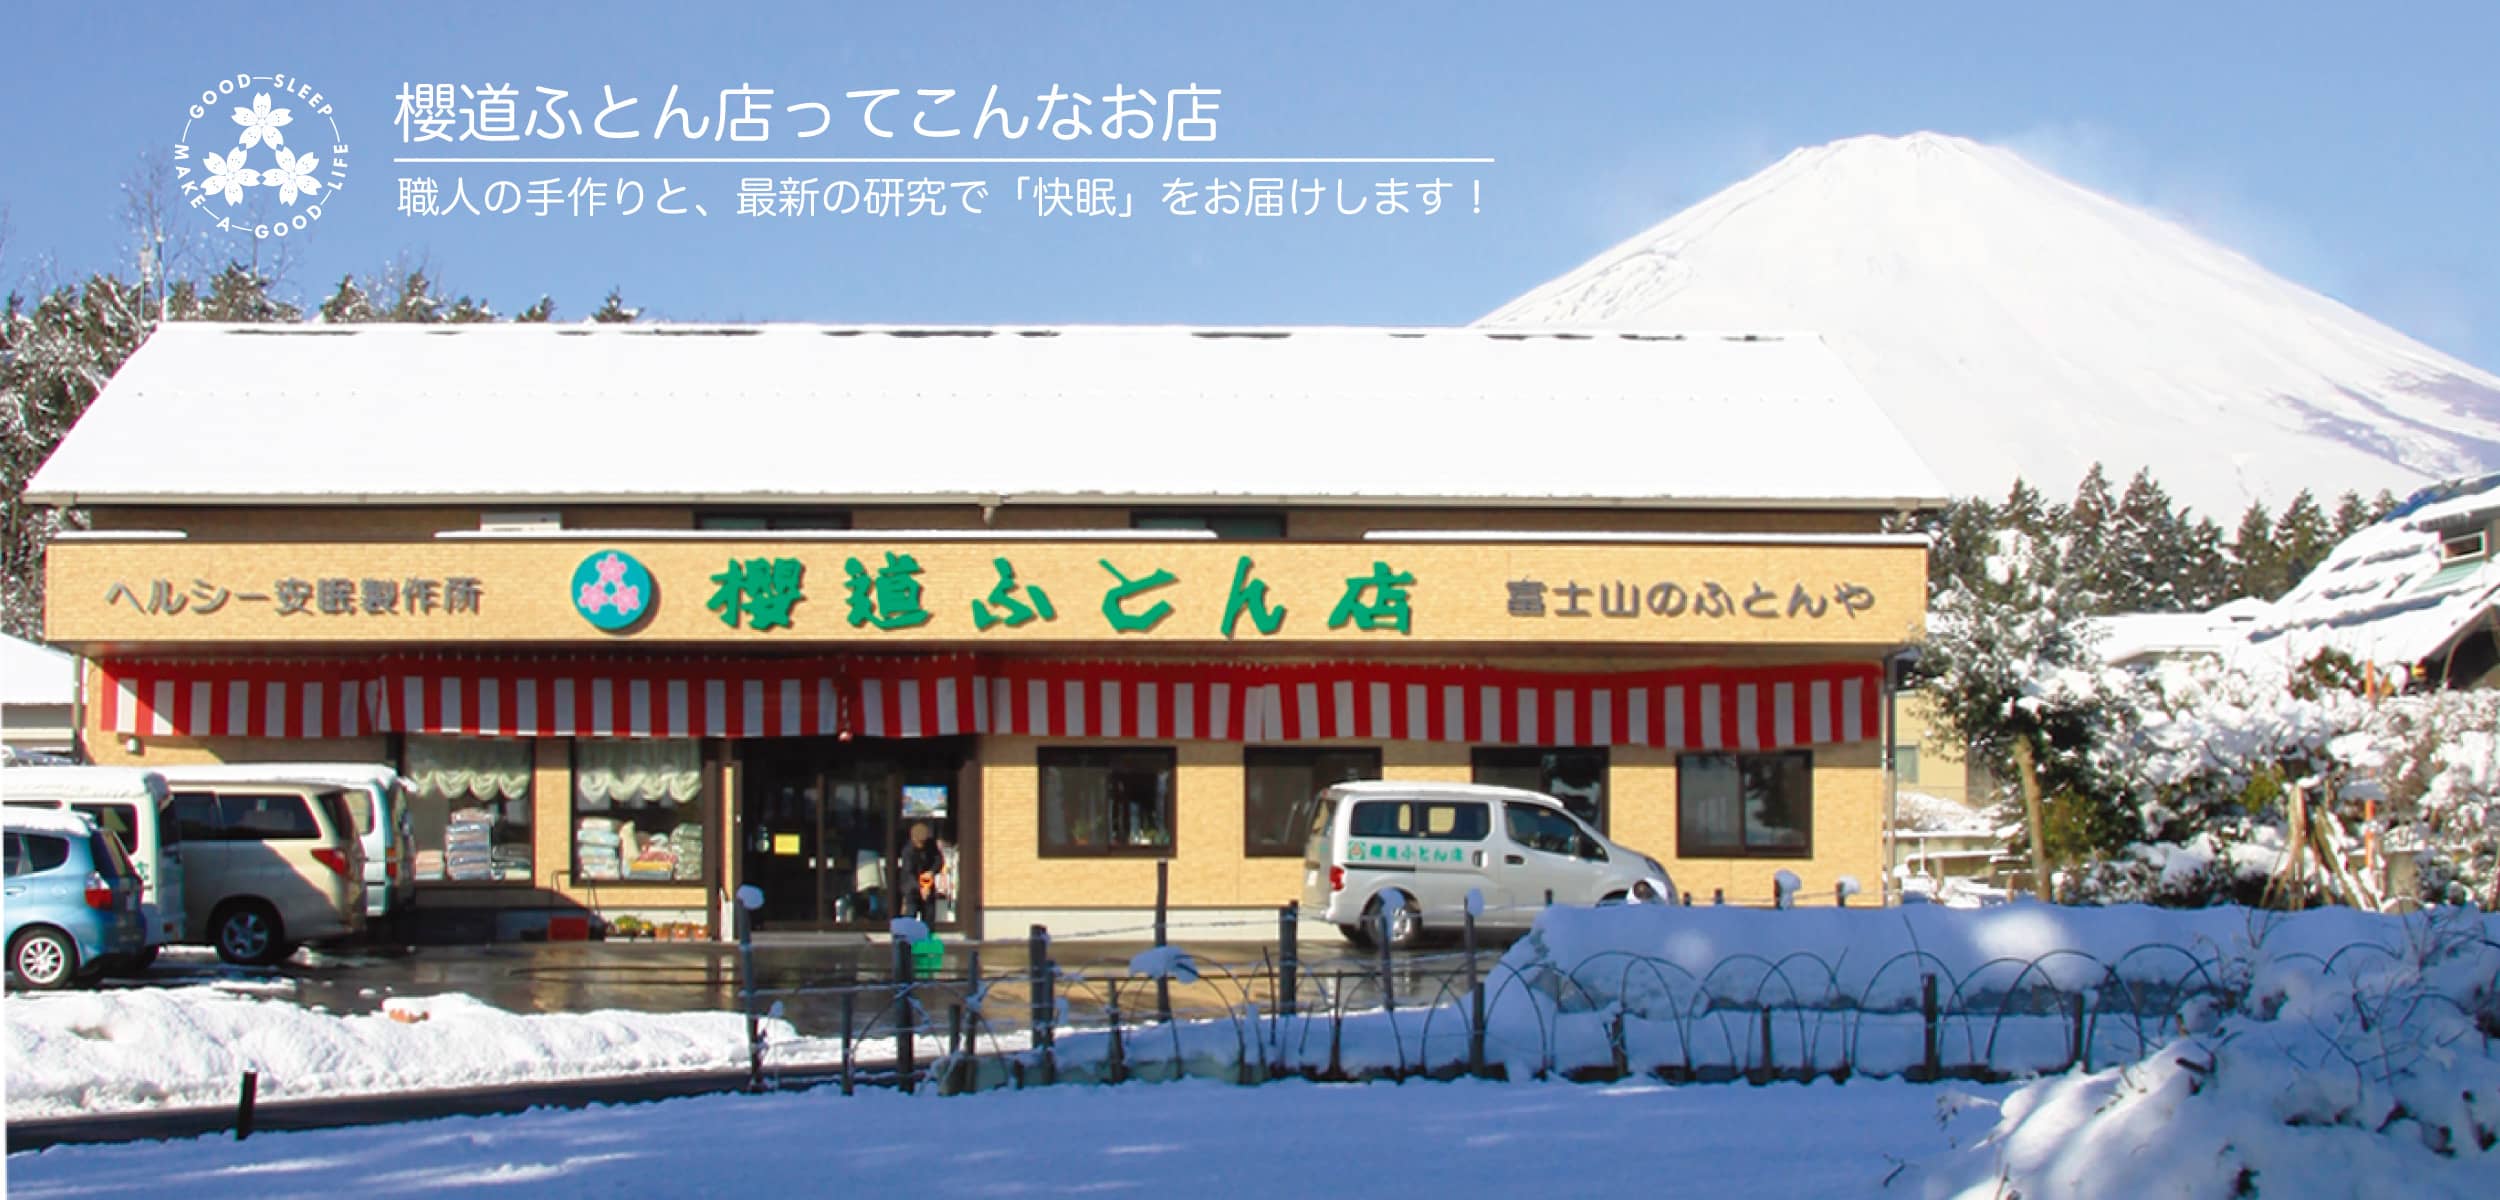 健康寝具の製造直販店 富士山の麓の布団屋 櫻道ふとん店ってこんなお店